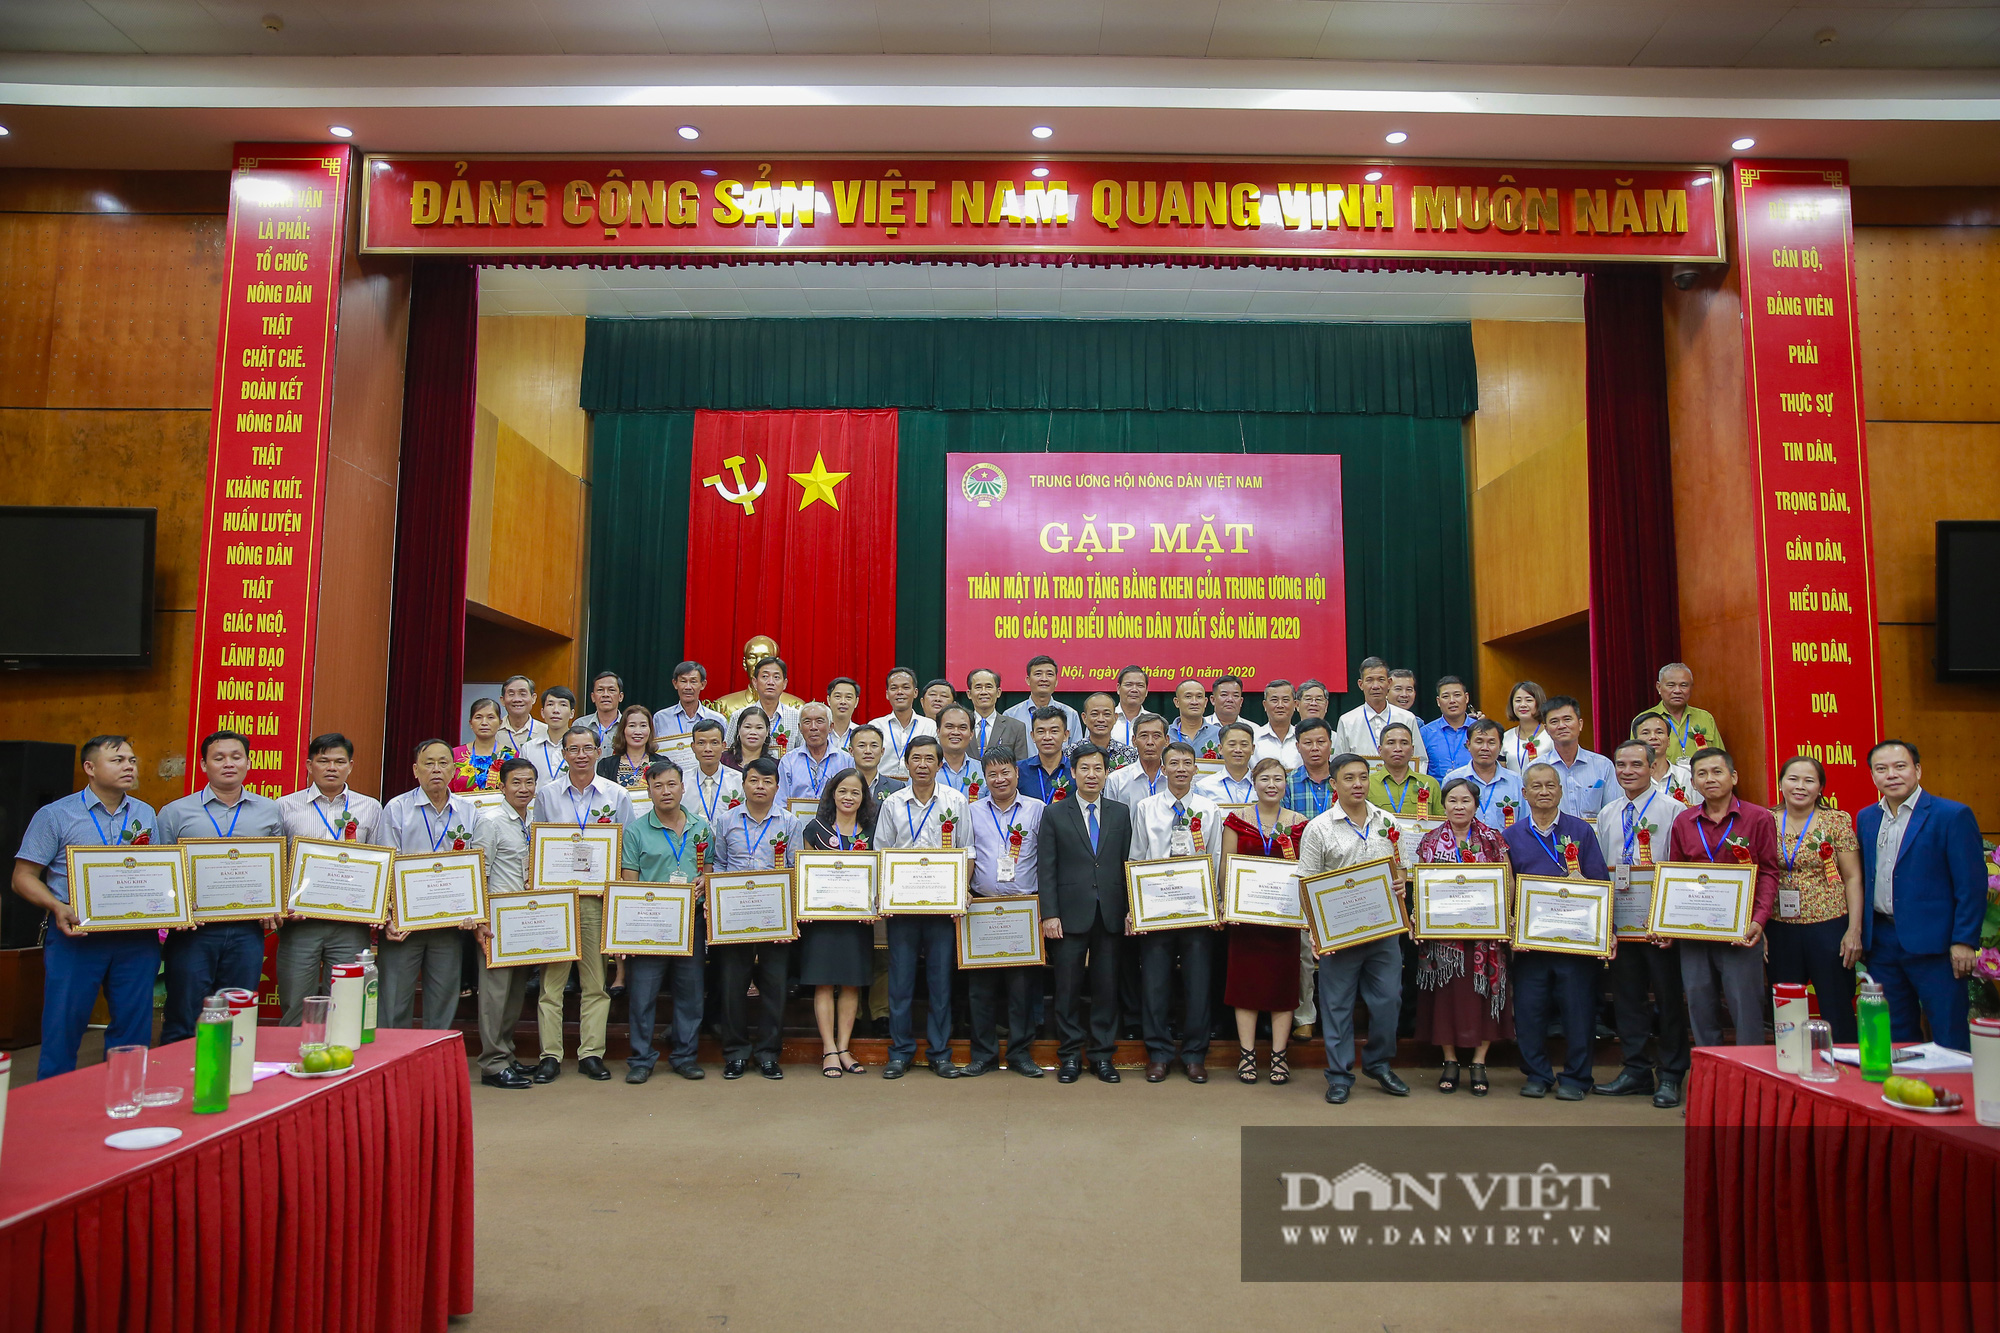 Hội Nông dân Việt Nam gặp gỡ thân mật cùng với 63 nông dân xuất sắc trên toàn quốc - Ảnh 12.